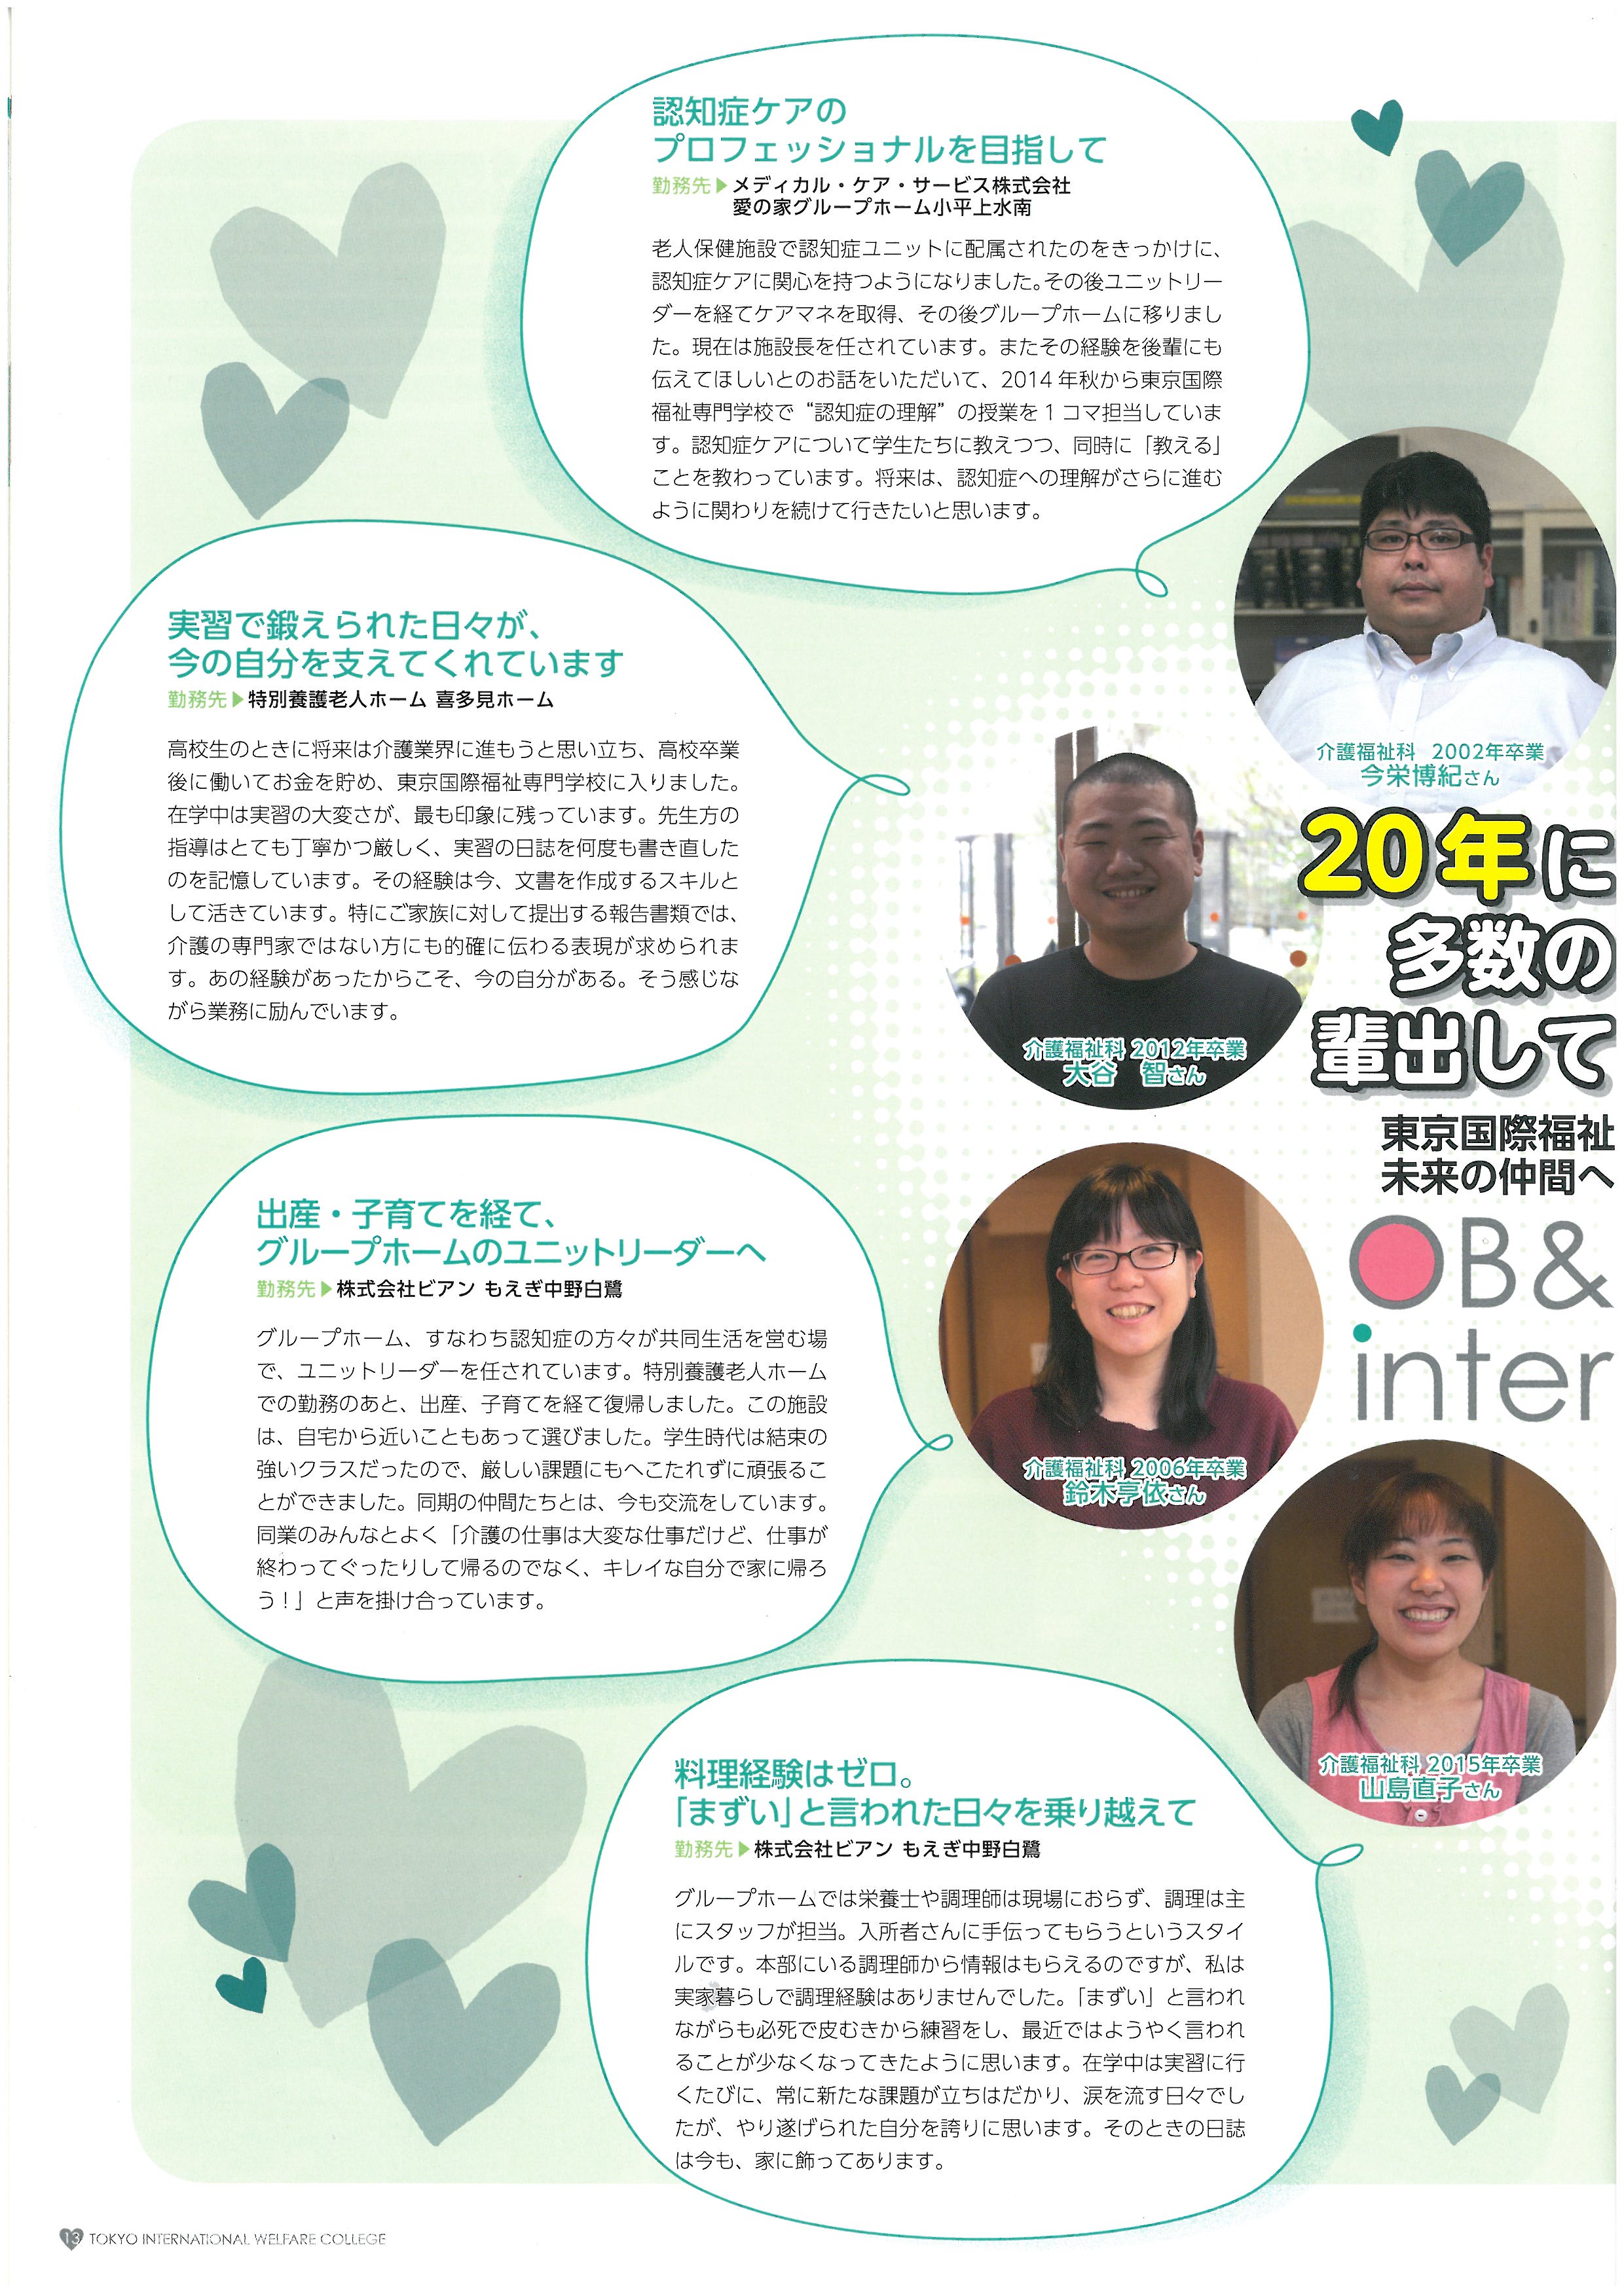 도쿄 국제복지전문학교 홍보 팜플렛 14.jpg